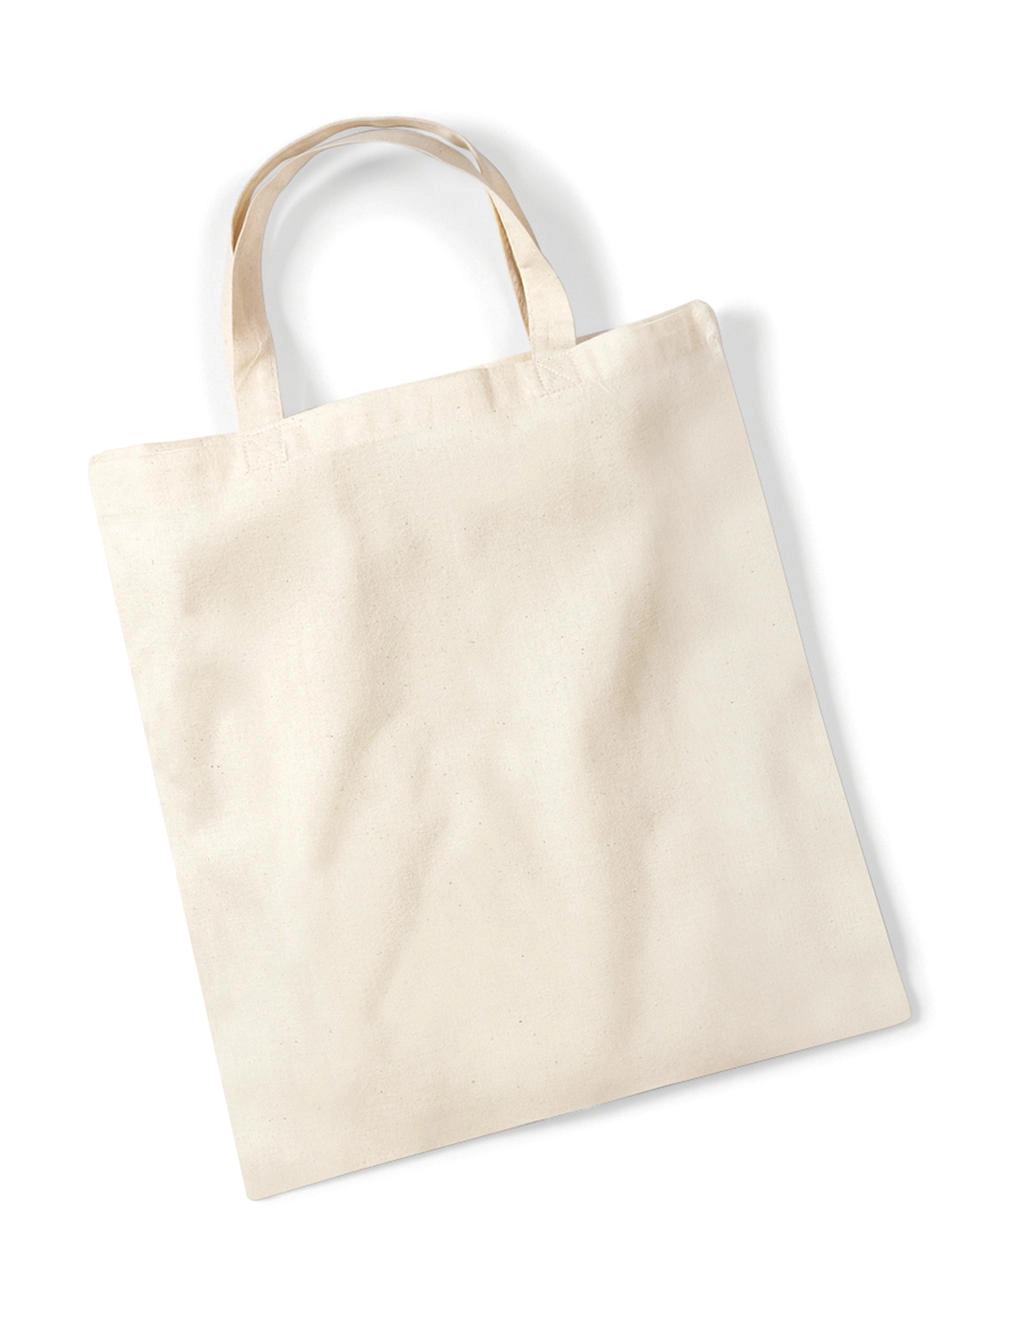 Budget Promo Bag For Life zum Besticken und Bedrucken in der Farbe Natural mit Ihren Logo, Schriftzug oder Motiv.